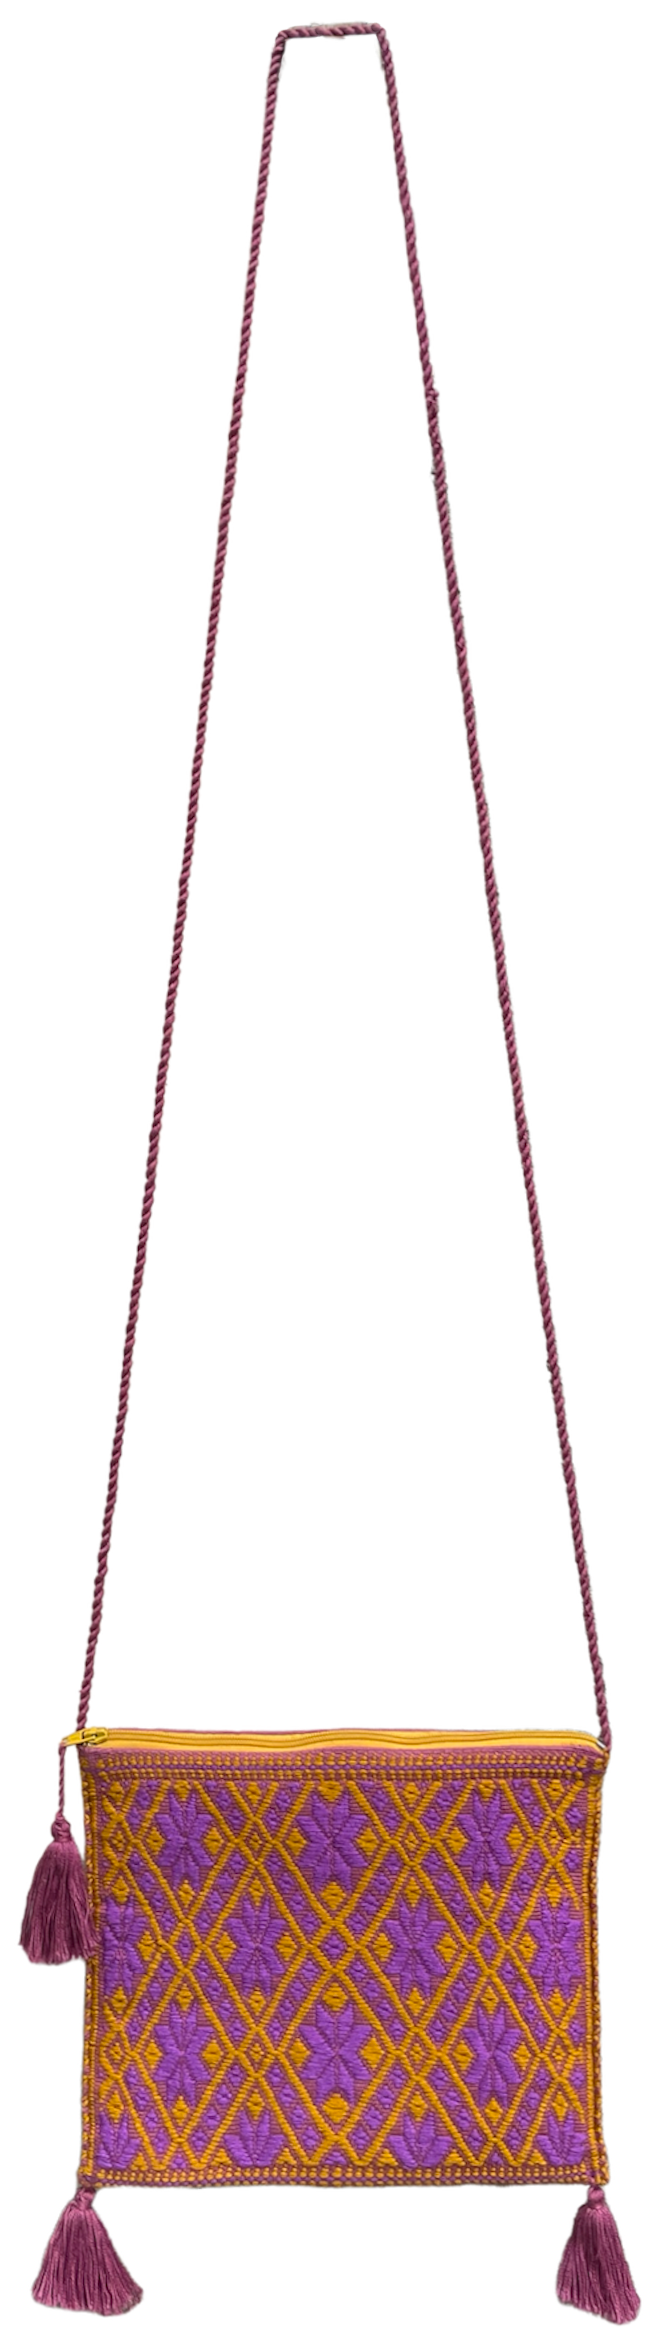 Pochette Tzotzil rembourrée, ocre et violette, 19cm x 16,5cm